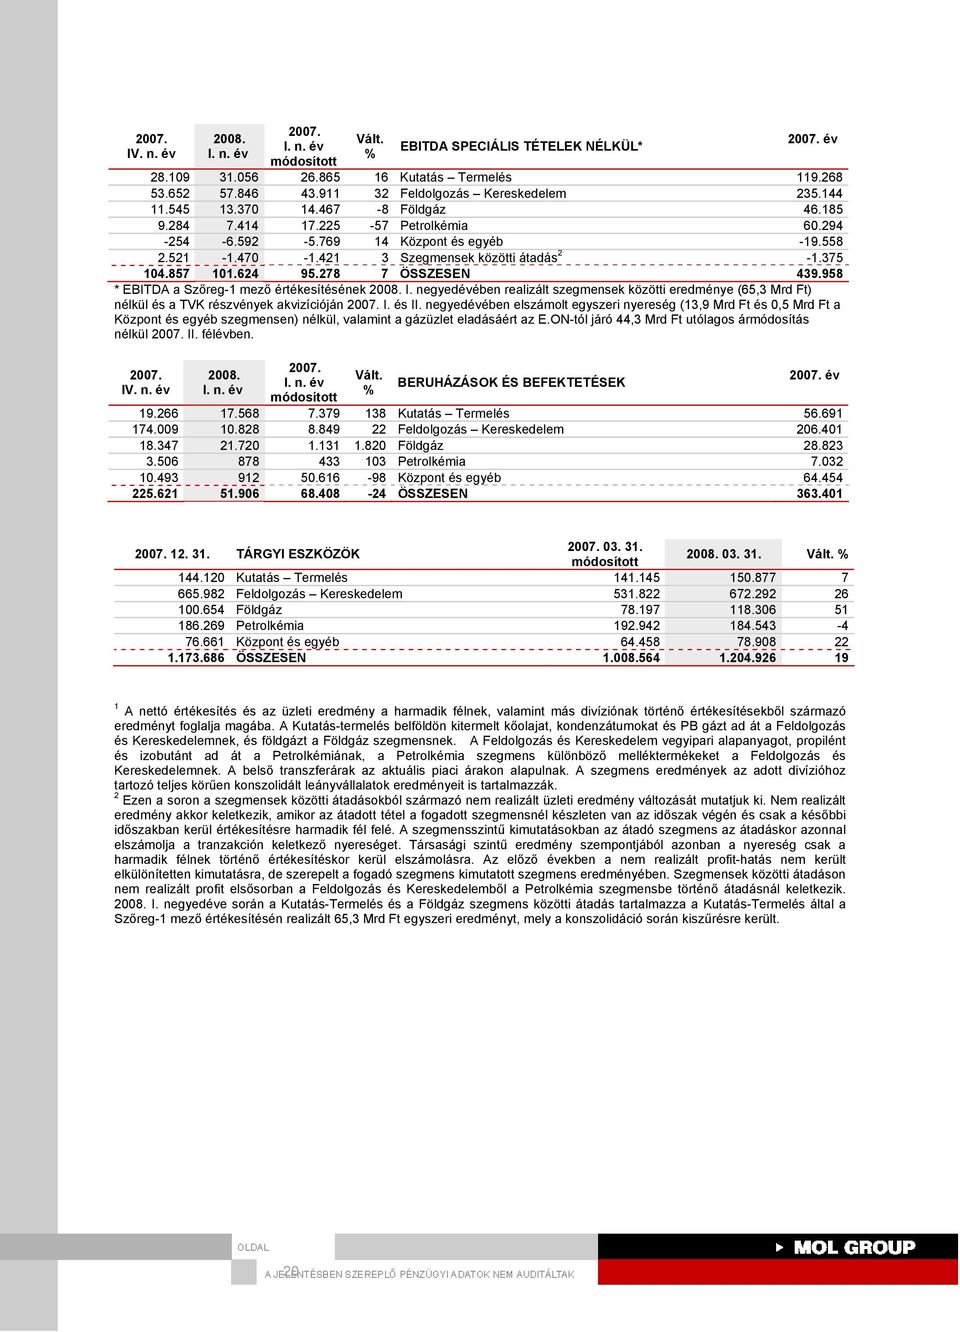 958 * EBITDA a Szőreg-1 mező értékesítésének I. negyedévében realizált szegmensek közötti eredménye (65,3 Mrd Ft) nélkül és a TVK részvények akvizícióján I. és II.